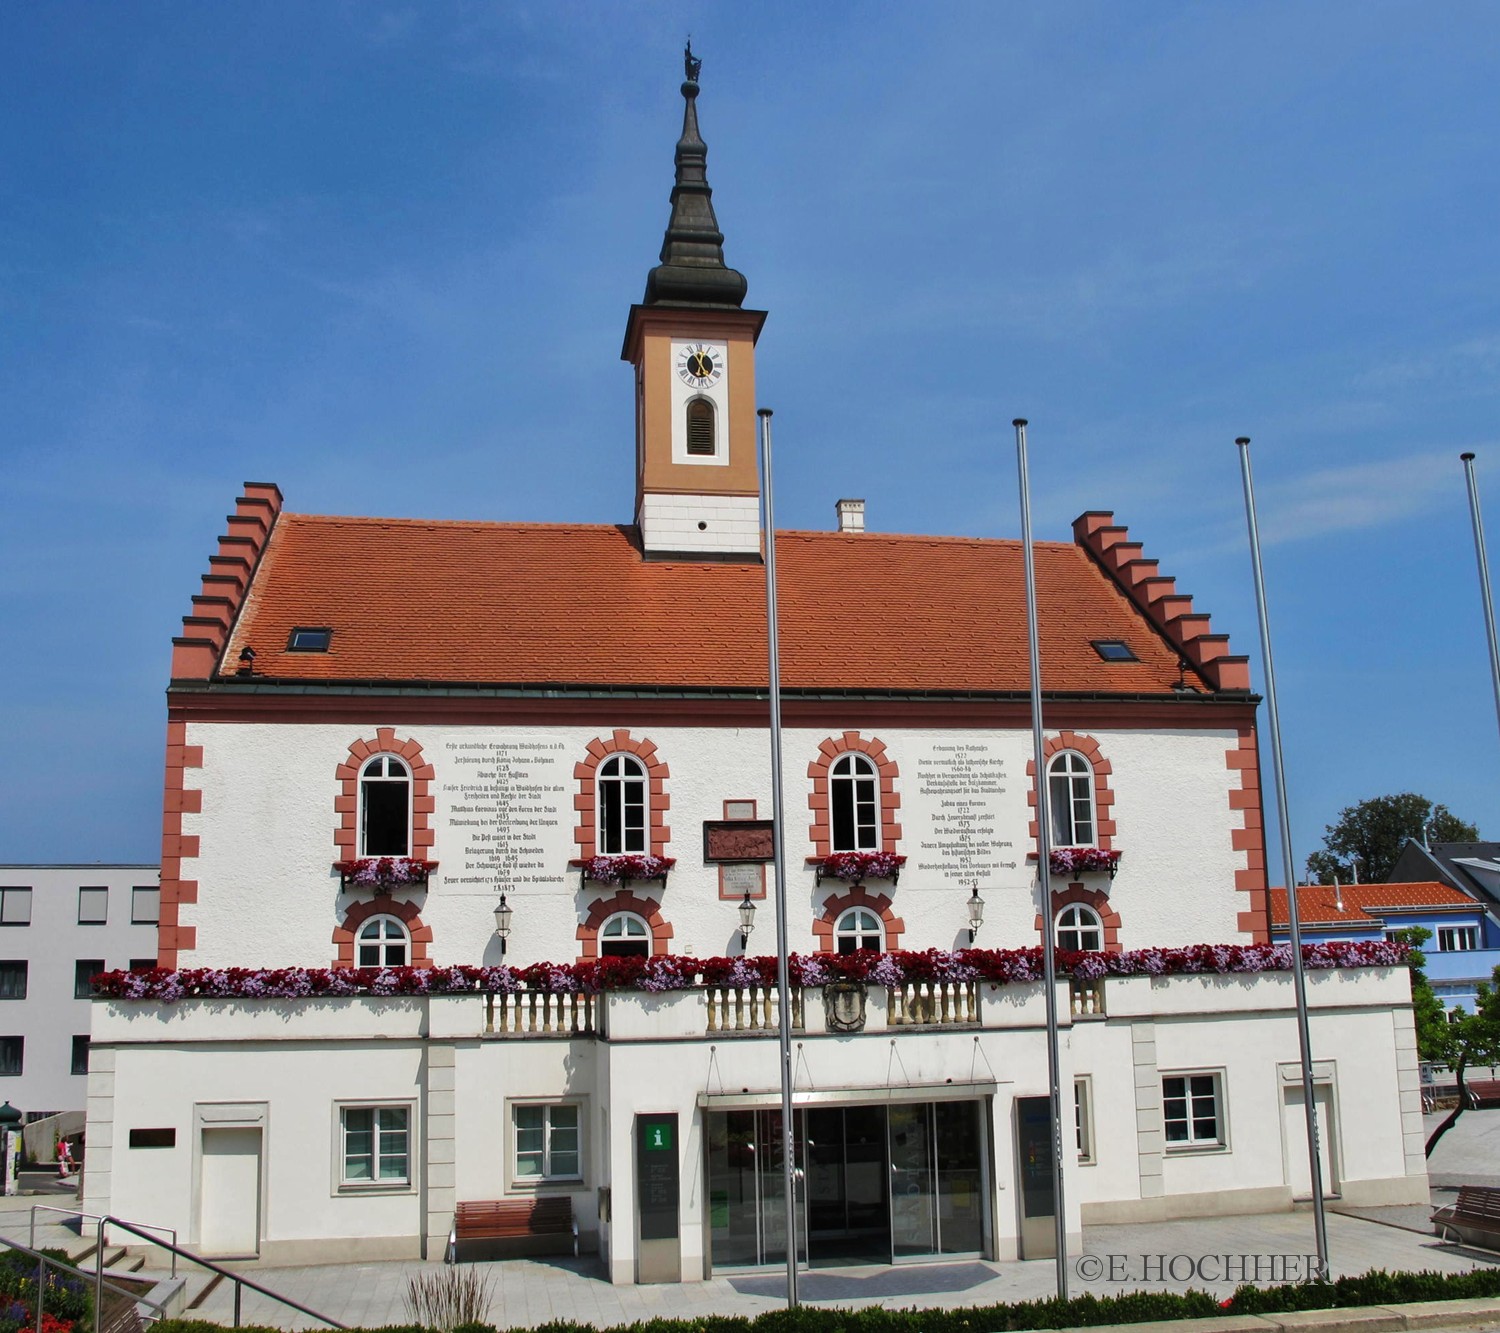 Rathaus Waidhofen/Thaya